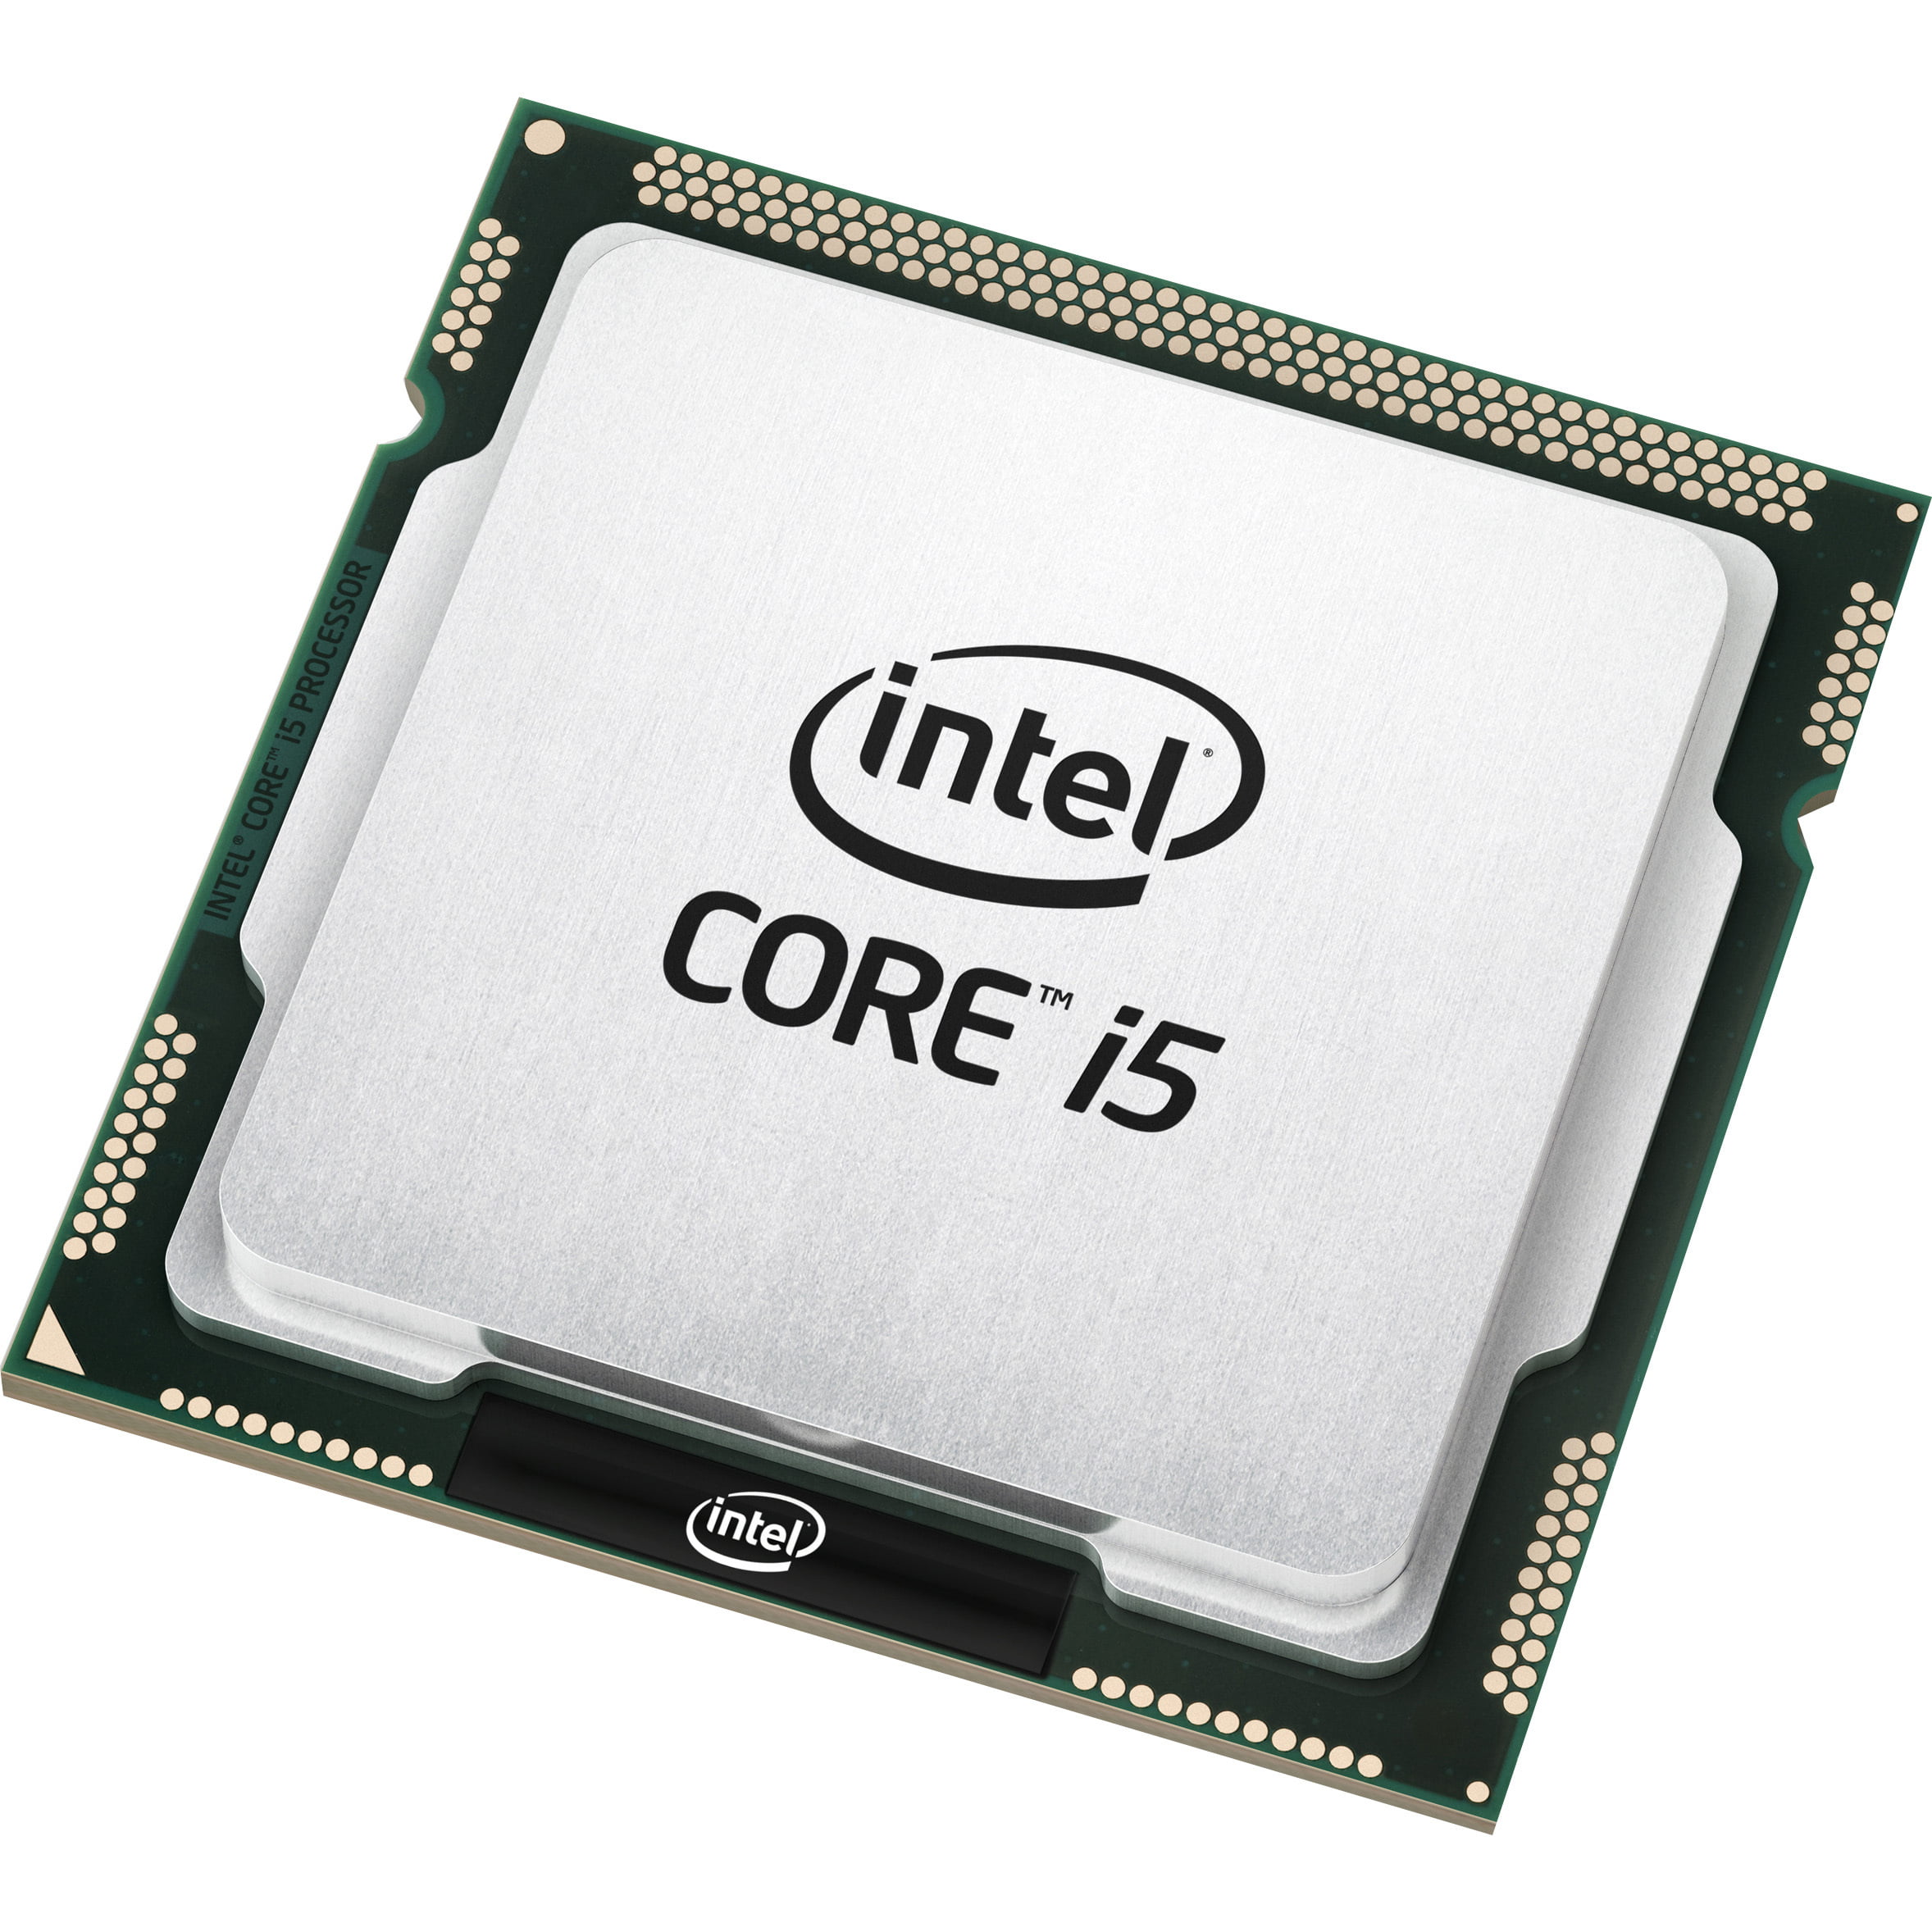 Core I5 Quad Core I5 3470 3 2ghz Desktop Processor Walmart Com Walmart Com